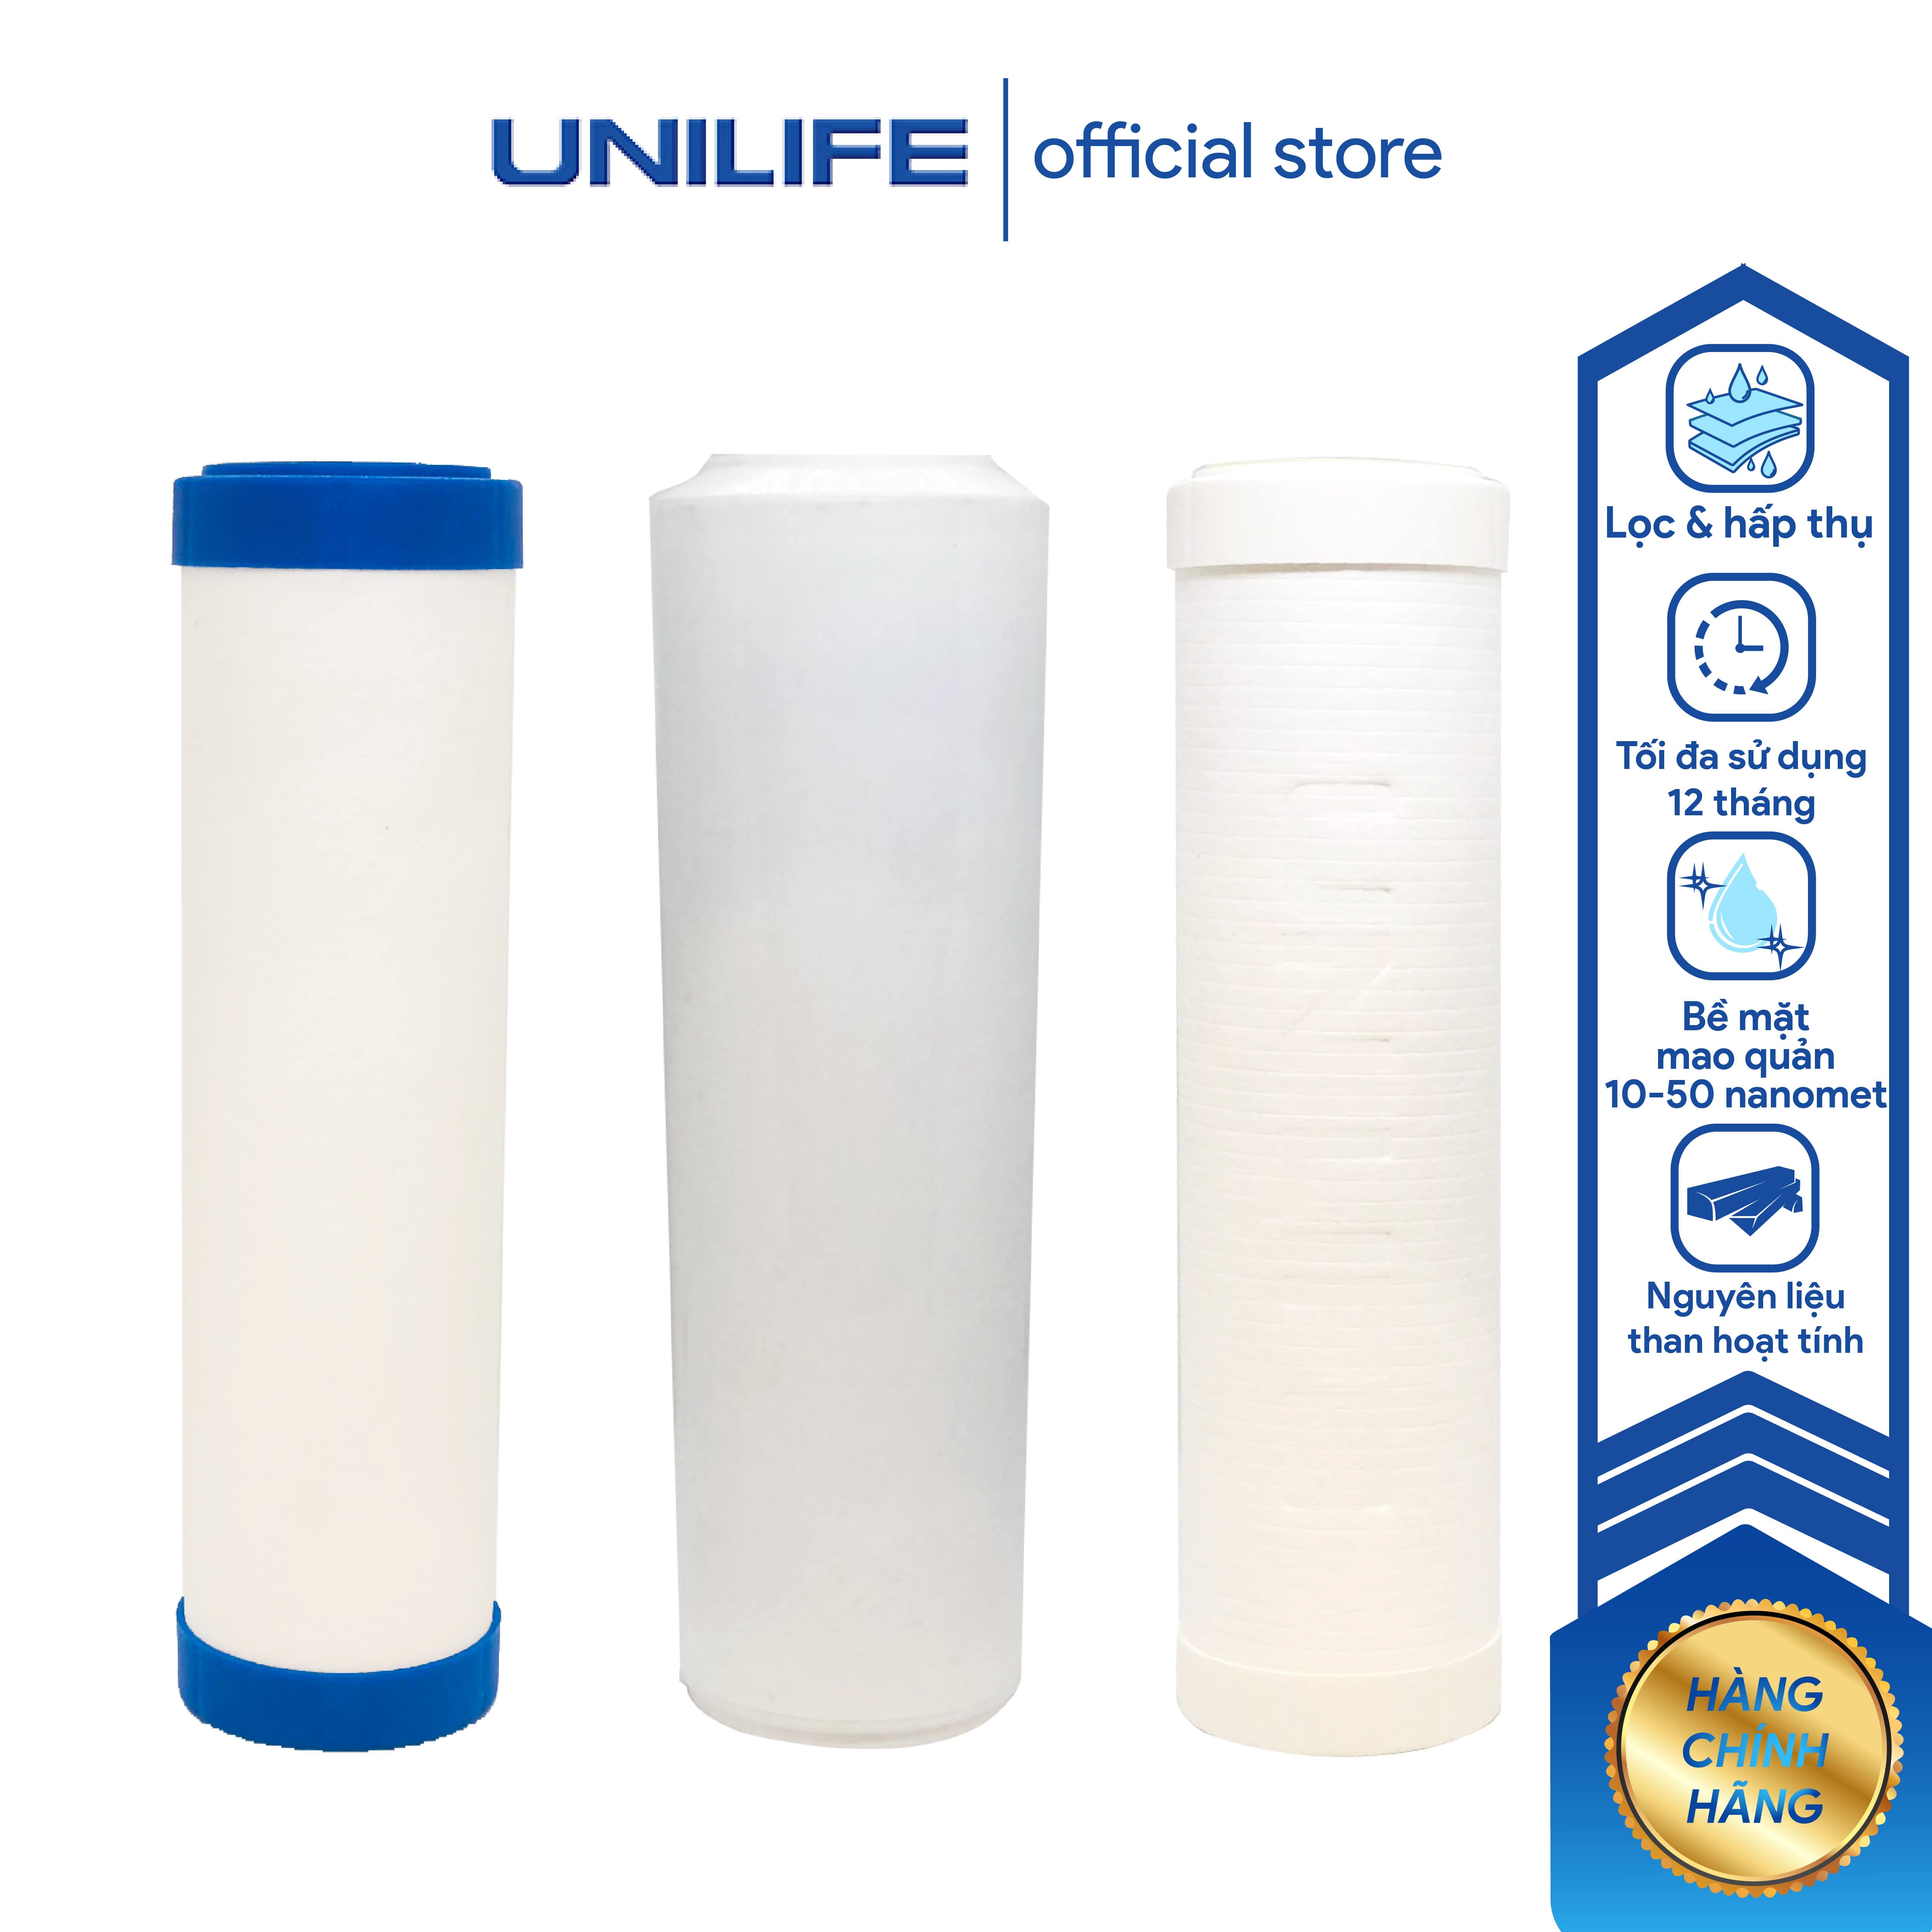 Bộ lõi lọc nước số 1, 2, 3 Unilife chính hãng, bộ lọc công nghệ lọc tinh khiết cùng than hoạt tính